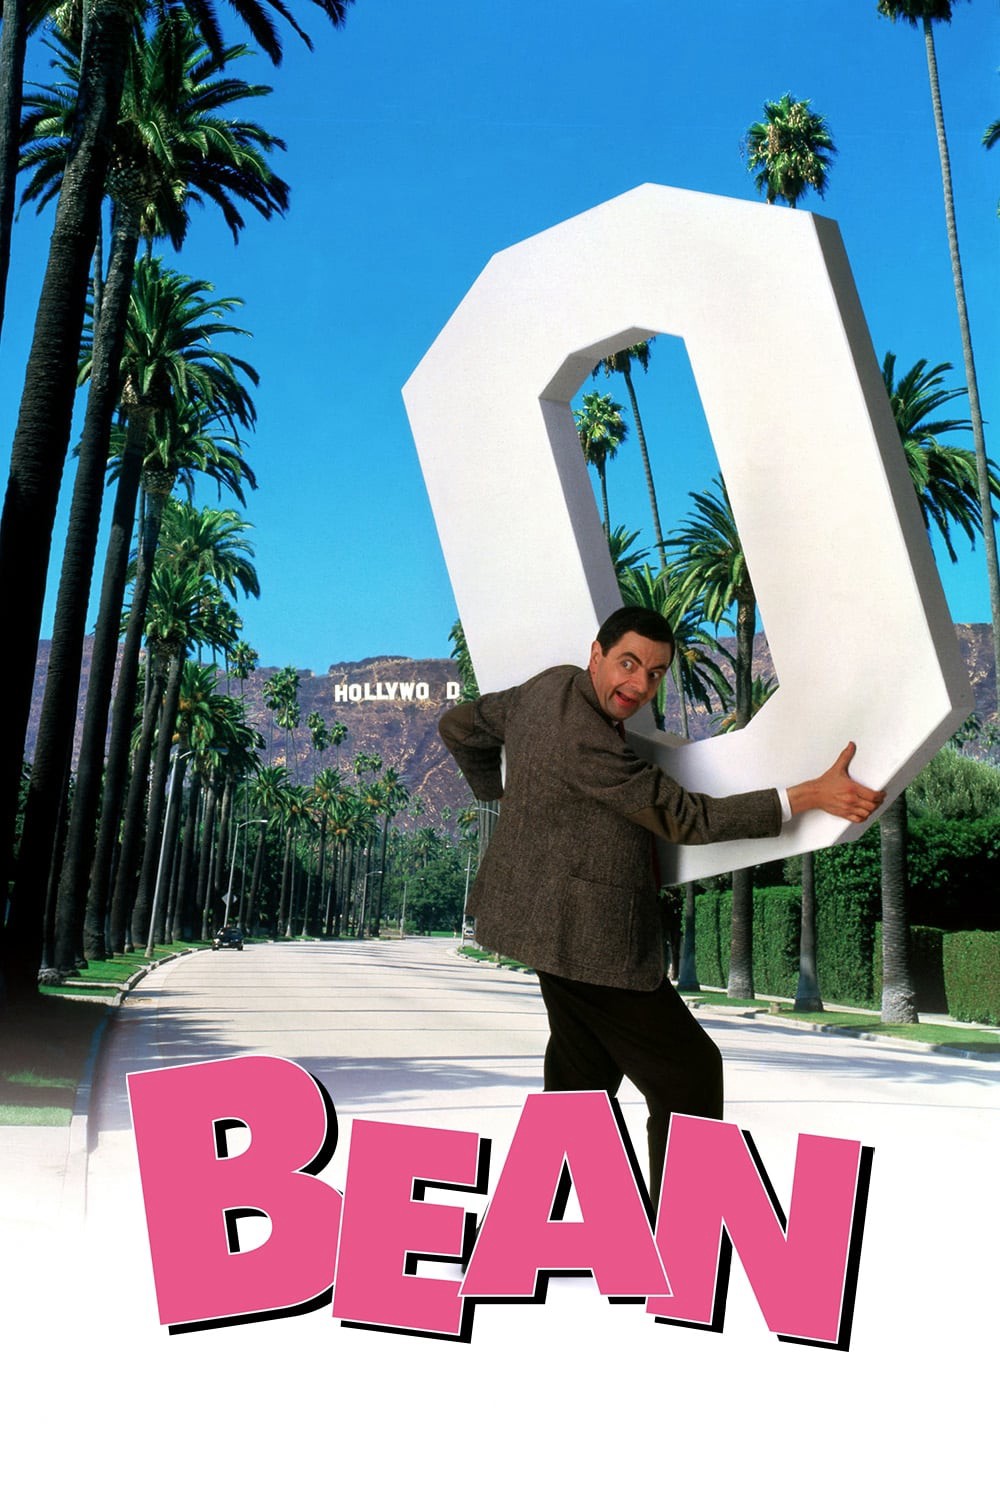 Ngài Bean 1997